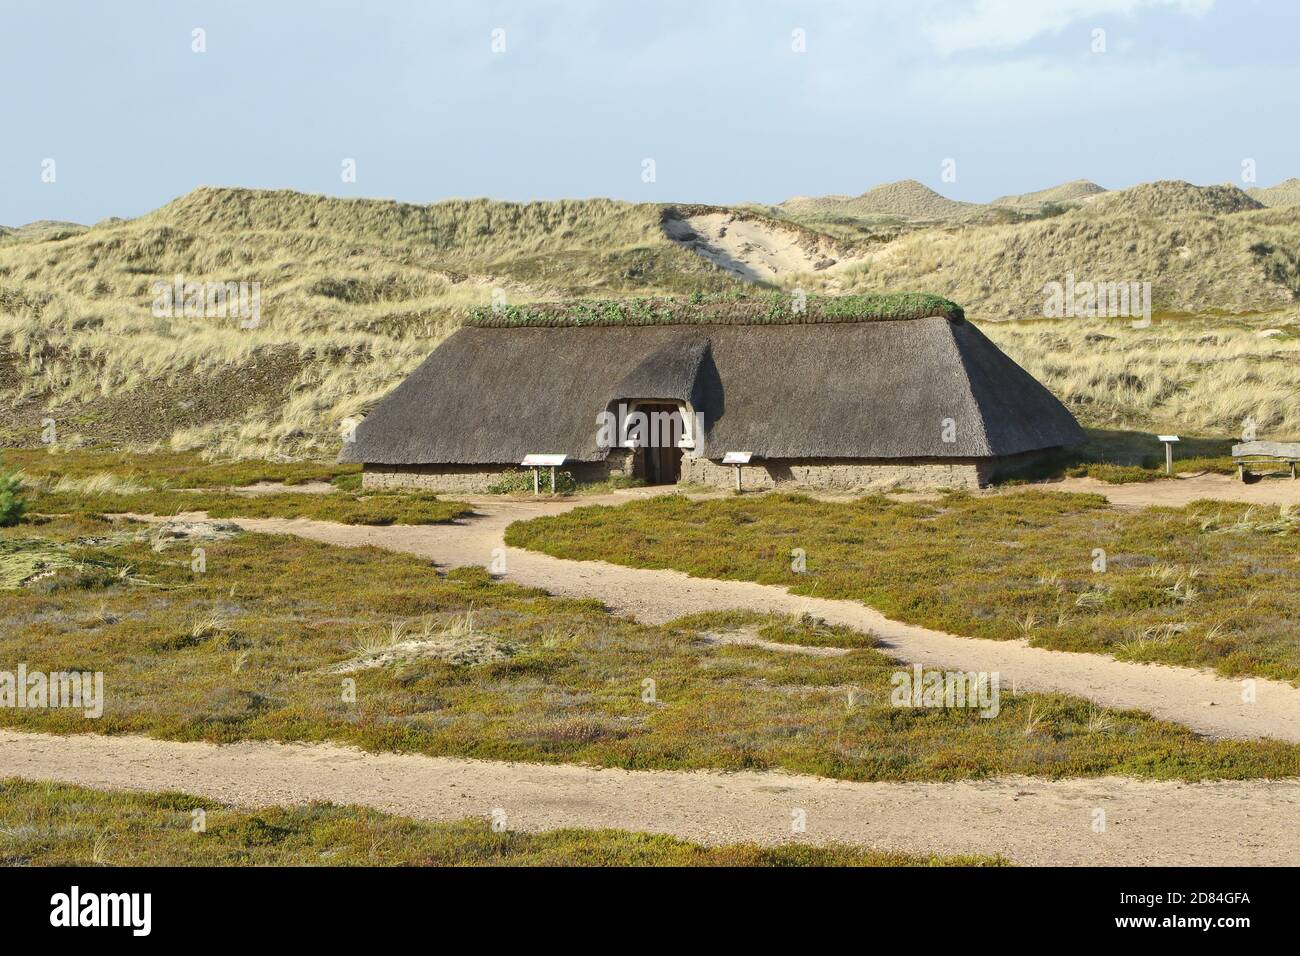 Iron Age House in dune landscape, Isle of Amrum, North Frisian islands, Schleswig-Holstein, Germany Stock Photo